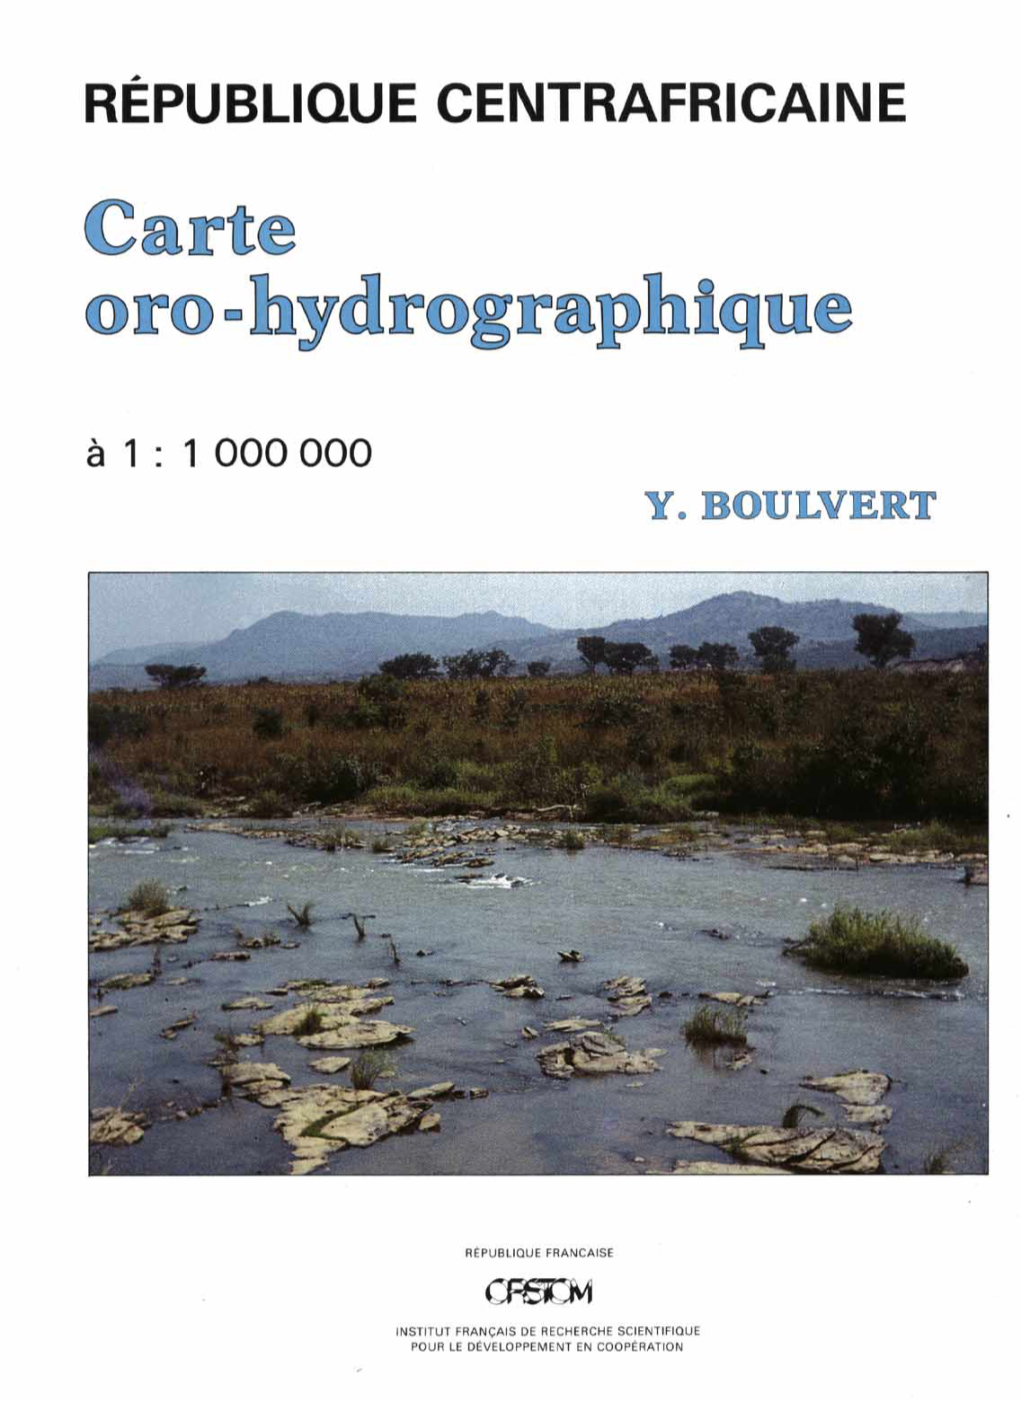 CARTE ORO-HYDROGRAPHIQUE DE LA RÉPUBLIQUE CENTRAFRICAINE (Feuille OUEST - Feuille EST)